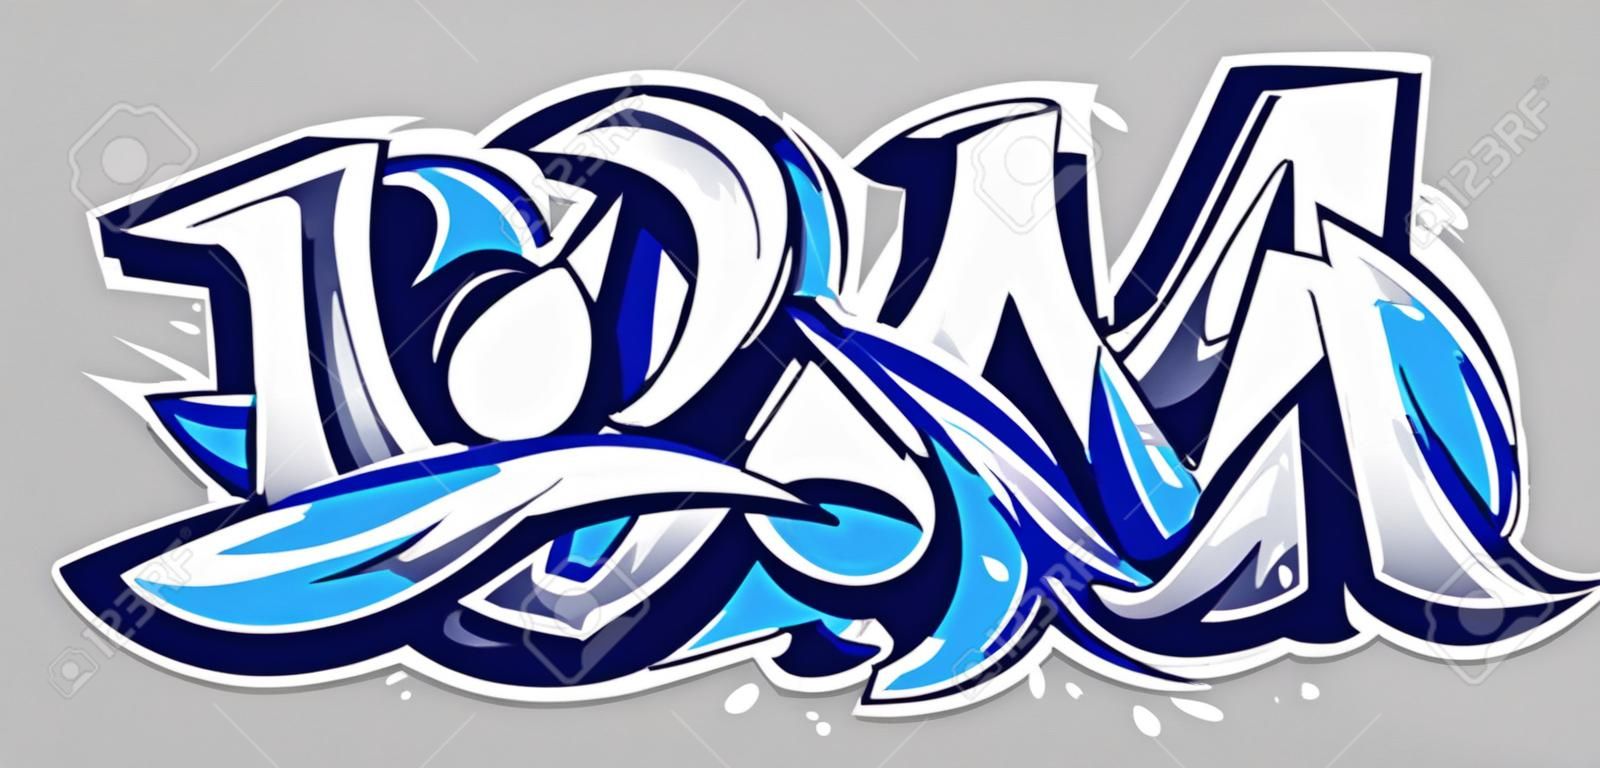 Big Up niebieski kolor wektor napis na szarym tle. Dynamiczne graffiti w dzikim stylu. Streszczenie ilustracji trójwymiarowych liter.